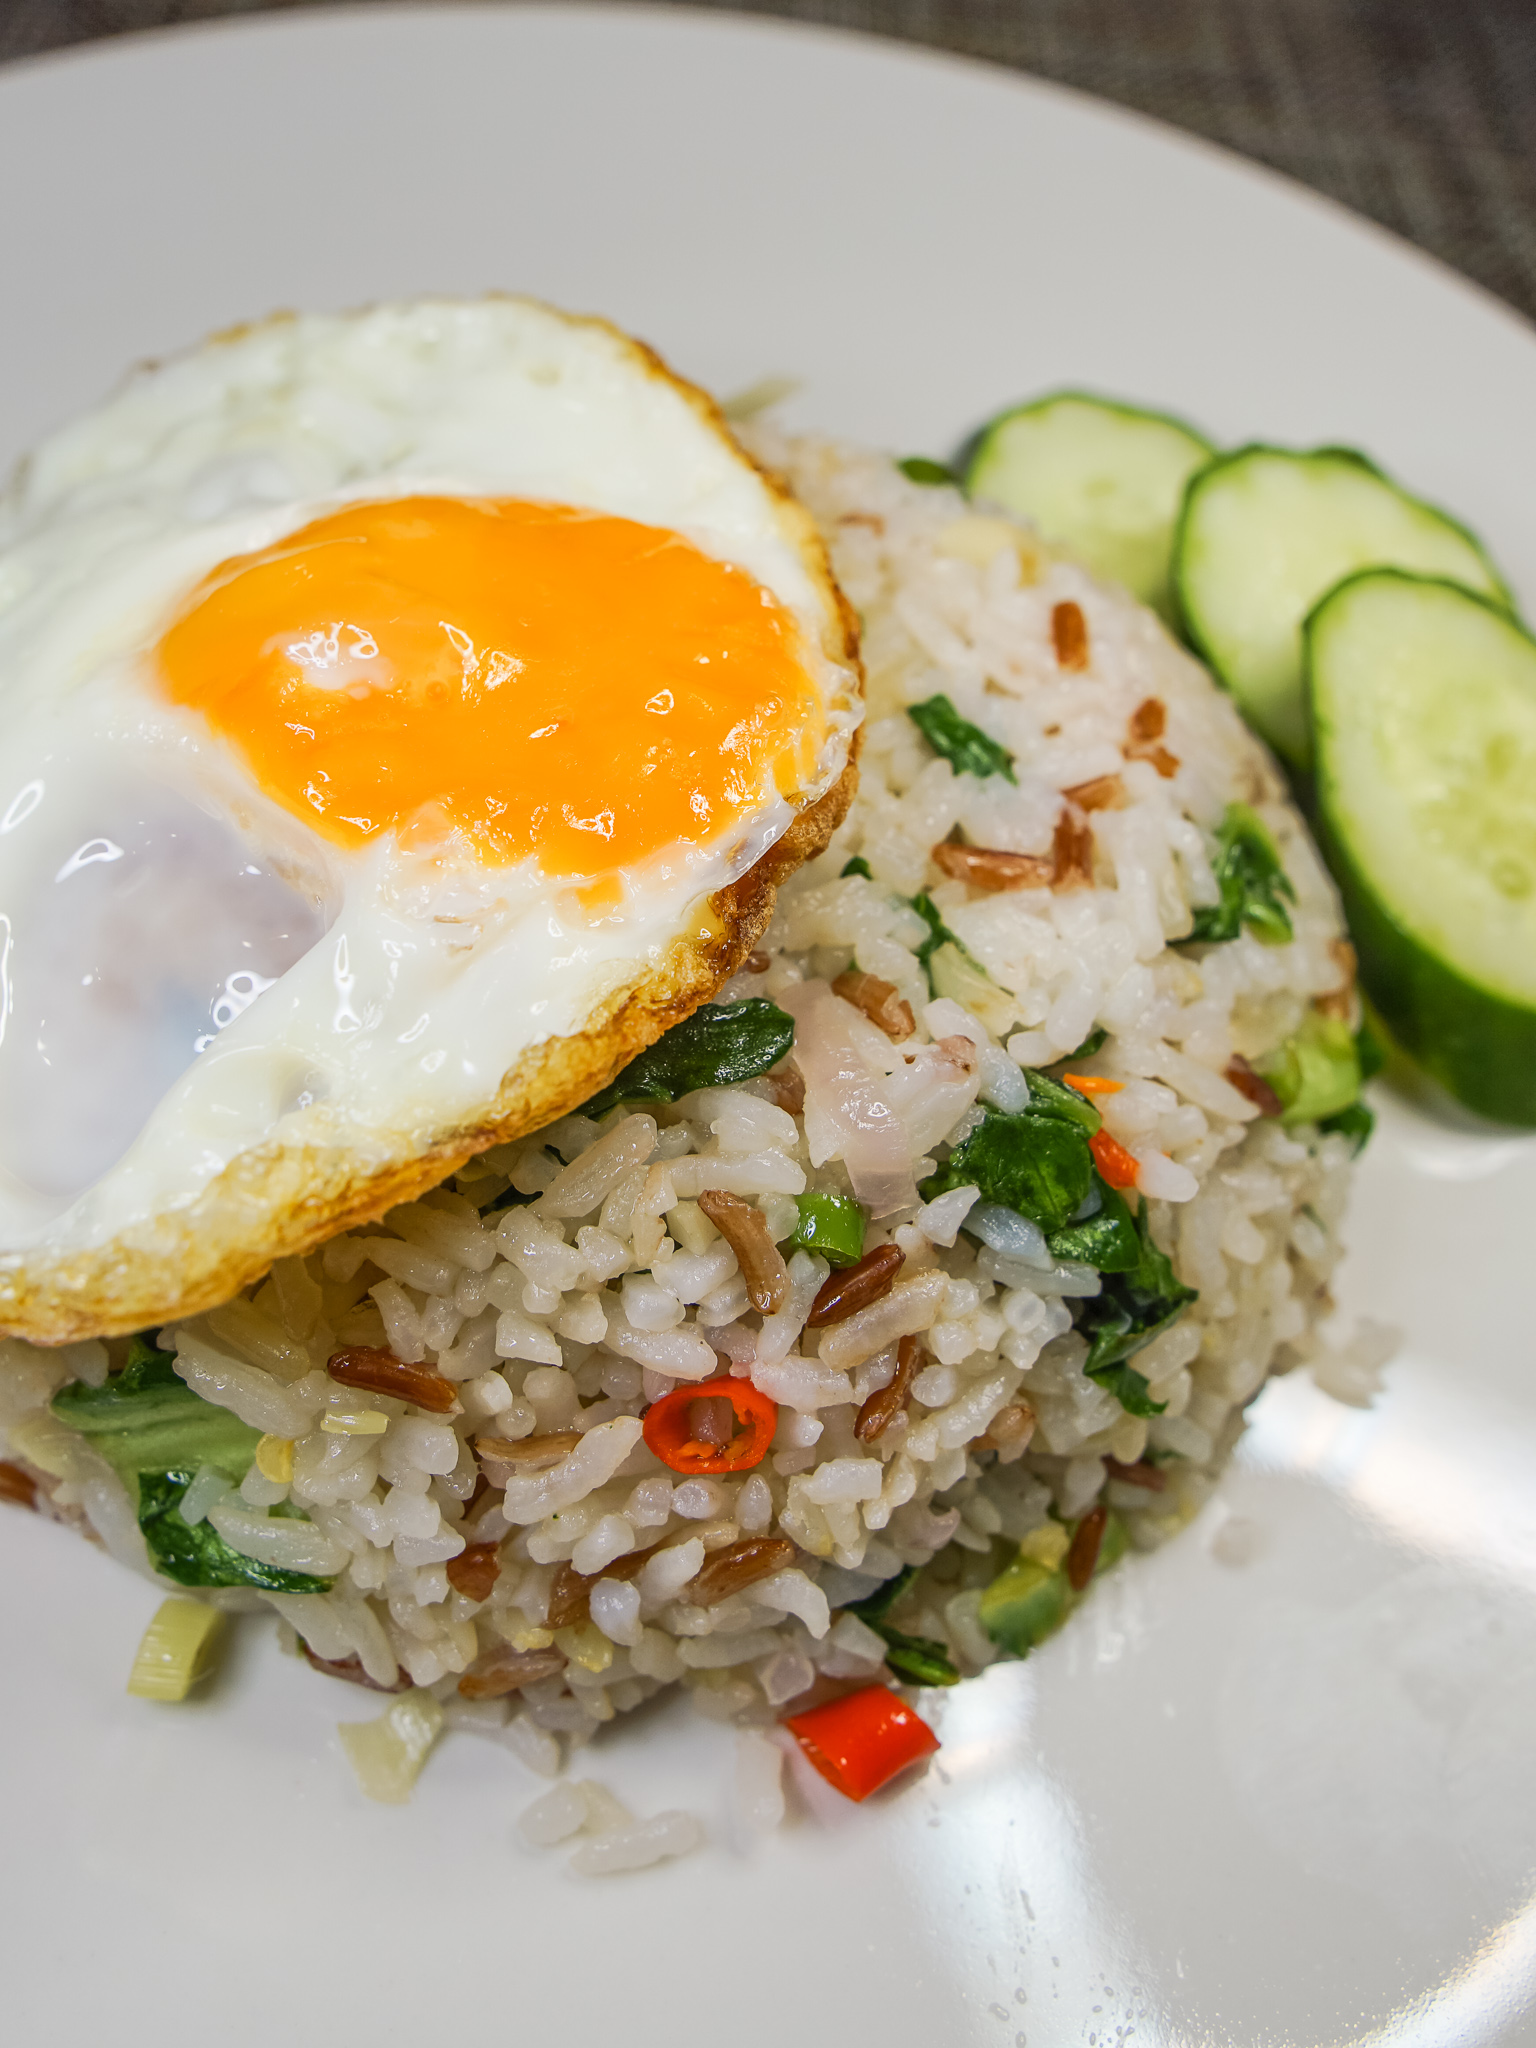 Nasi Goreng Sambal Matah | Sambal Matah Fried Rice